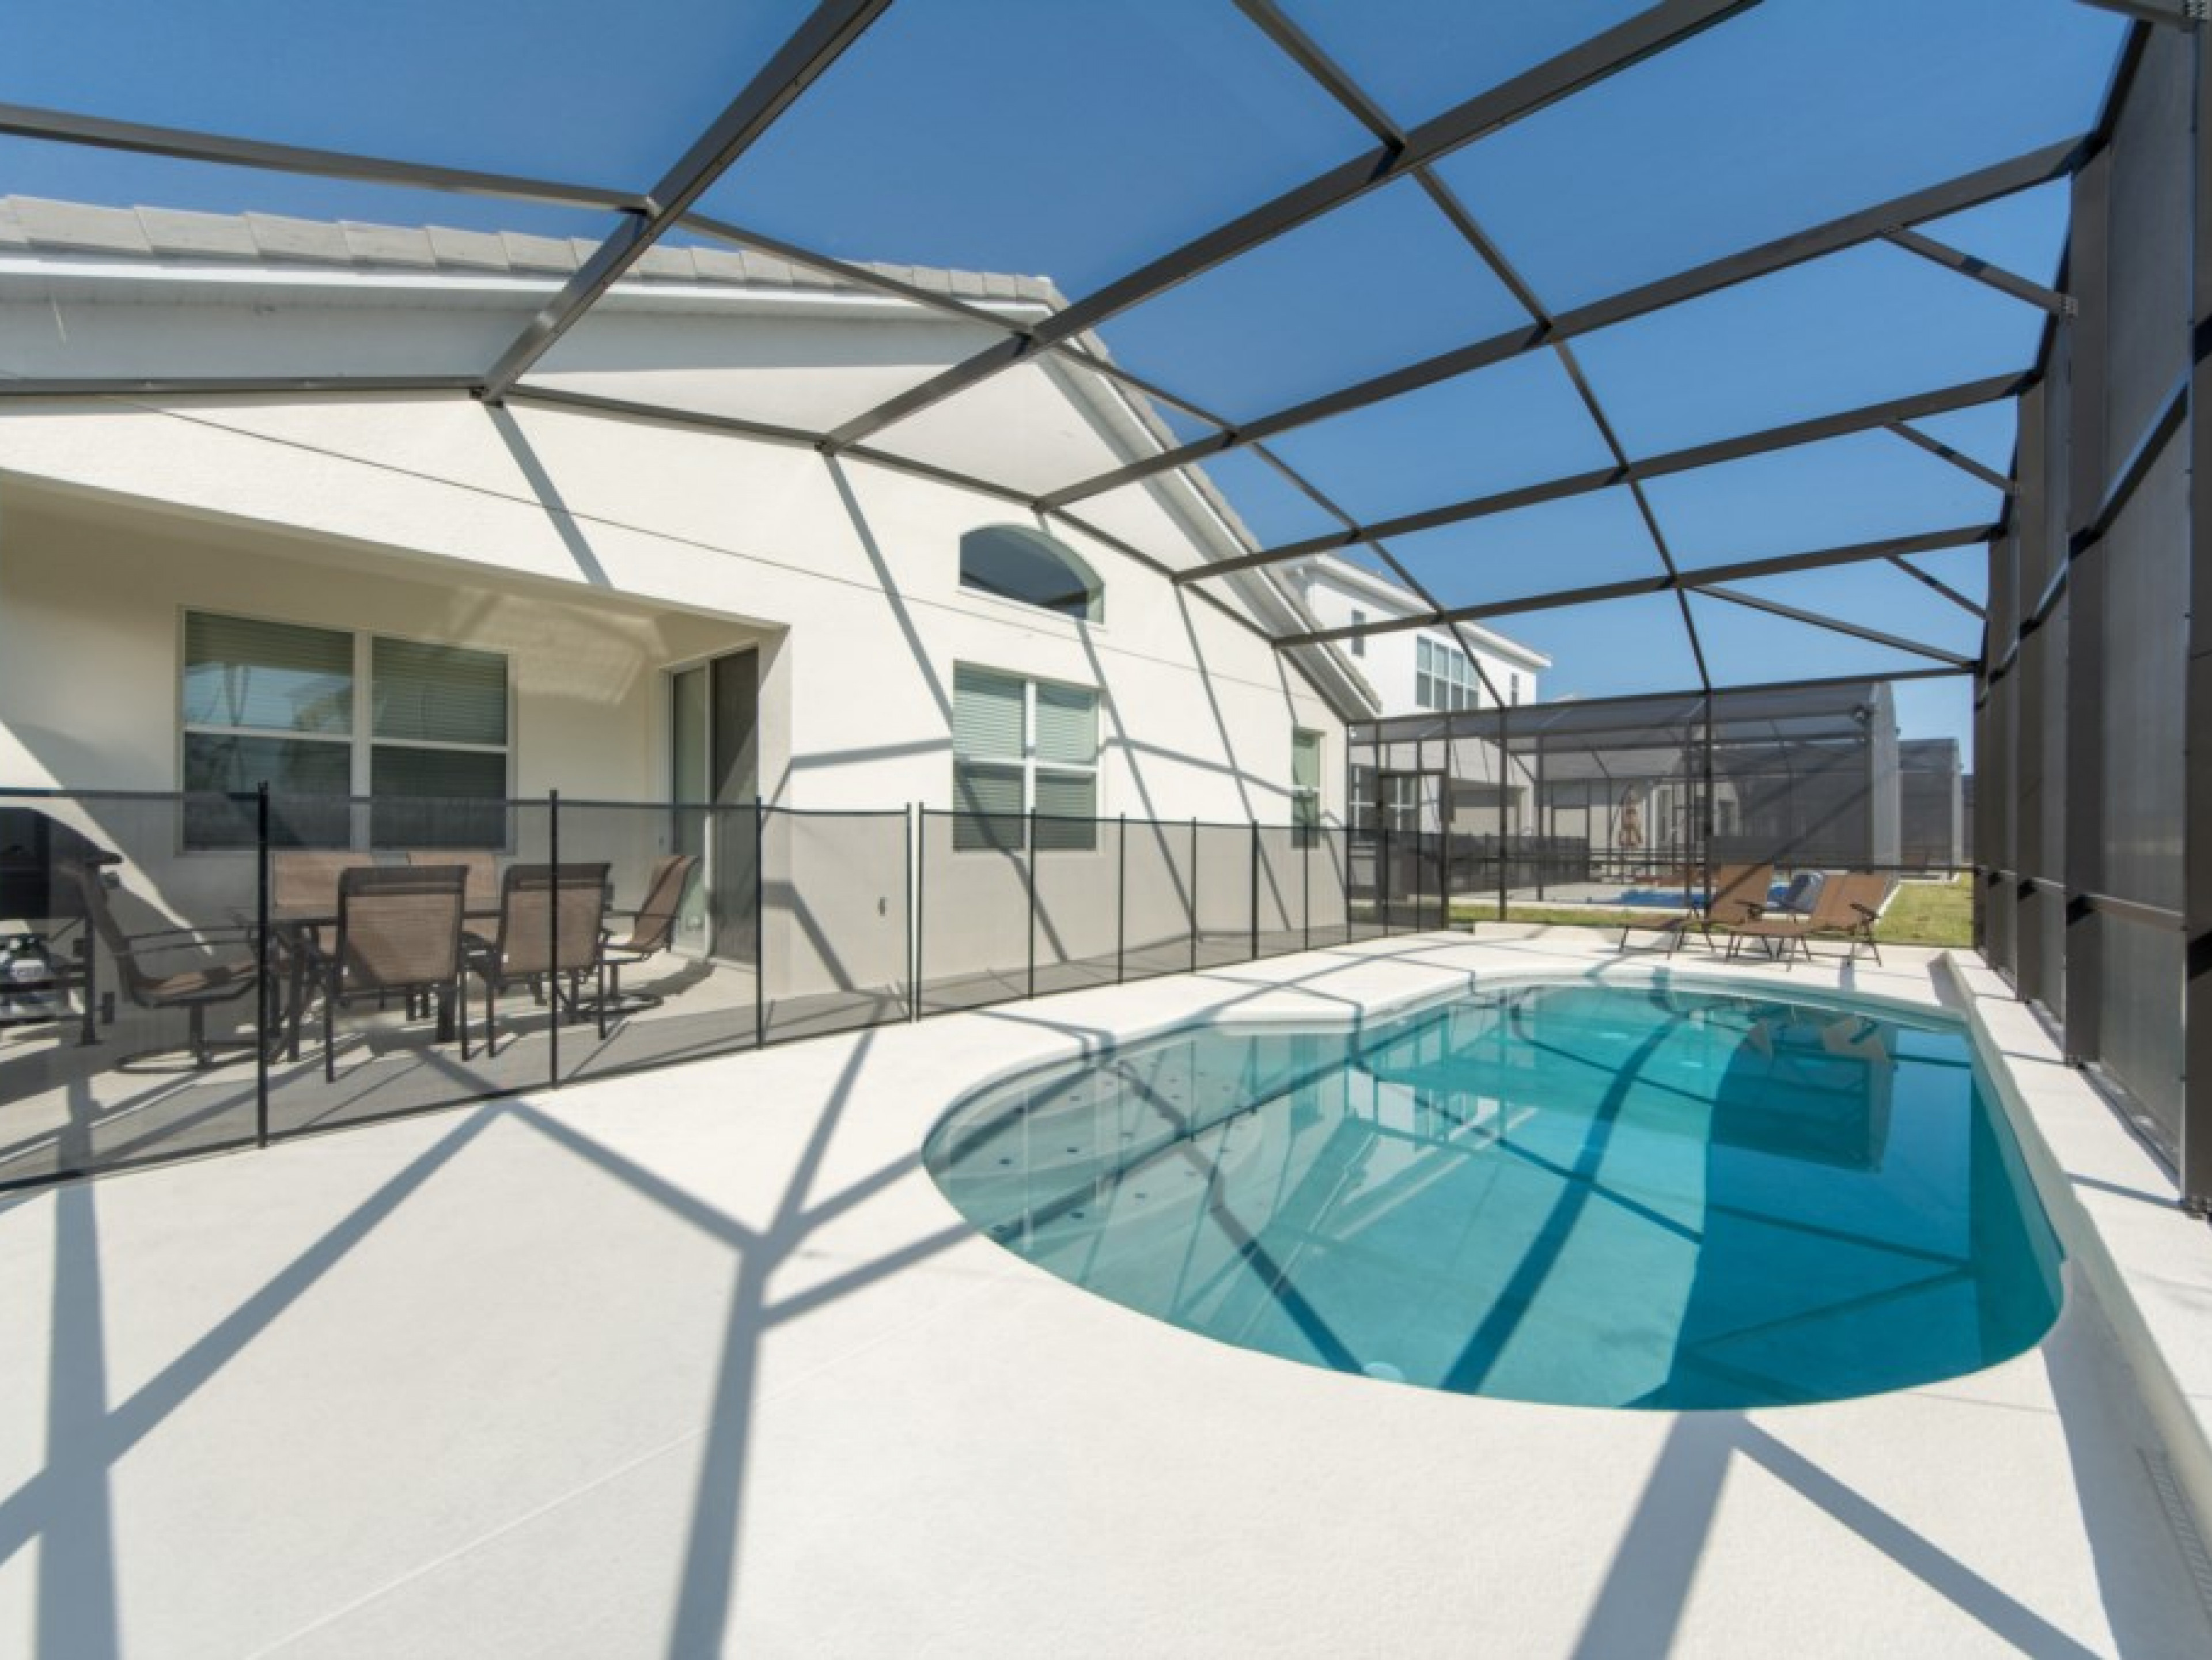 4 bedroom vacation rentals in Orlando Florida Sonoma Resort 24